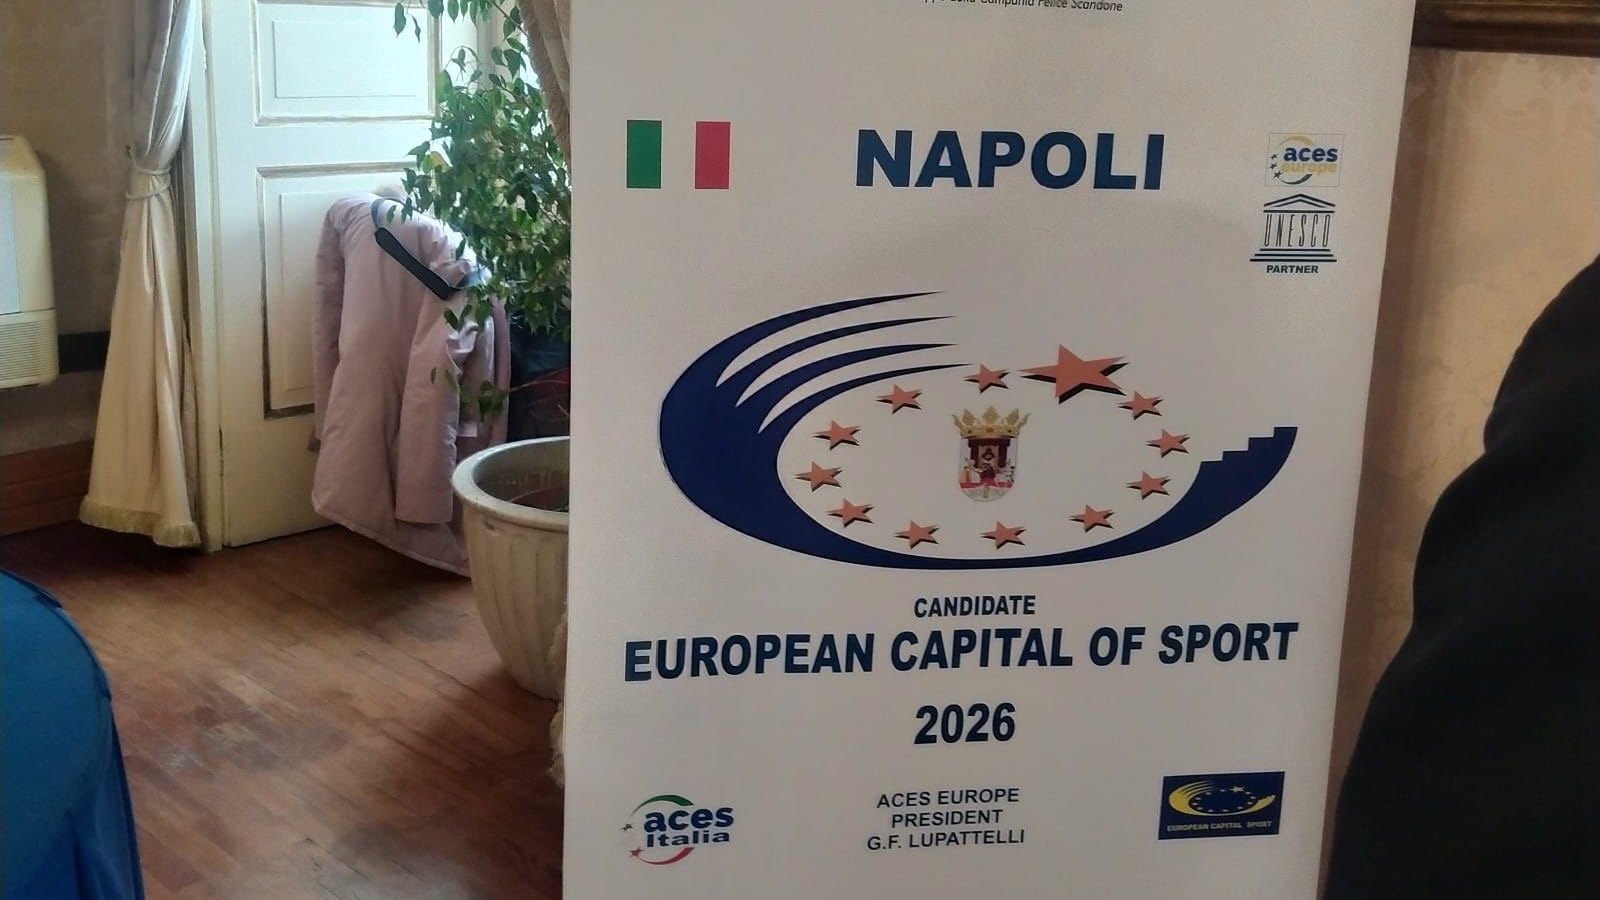 Capitale Europea dello Sport 2026, Napoli finalista insieme a Saragozza